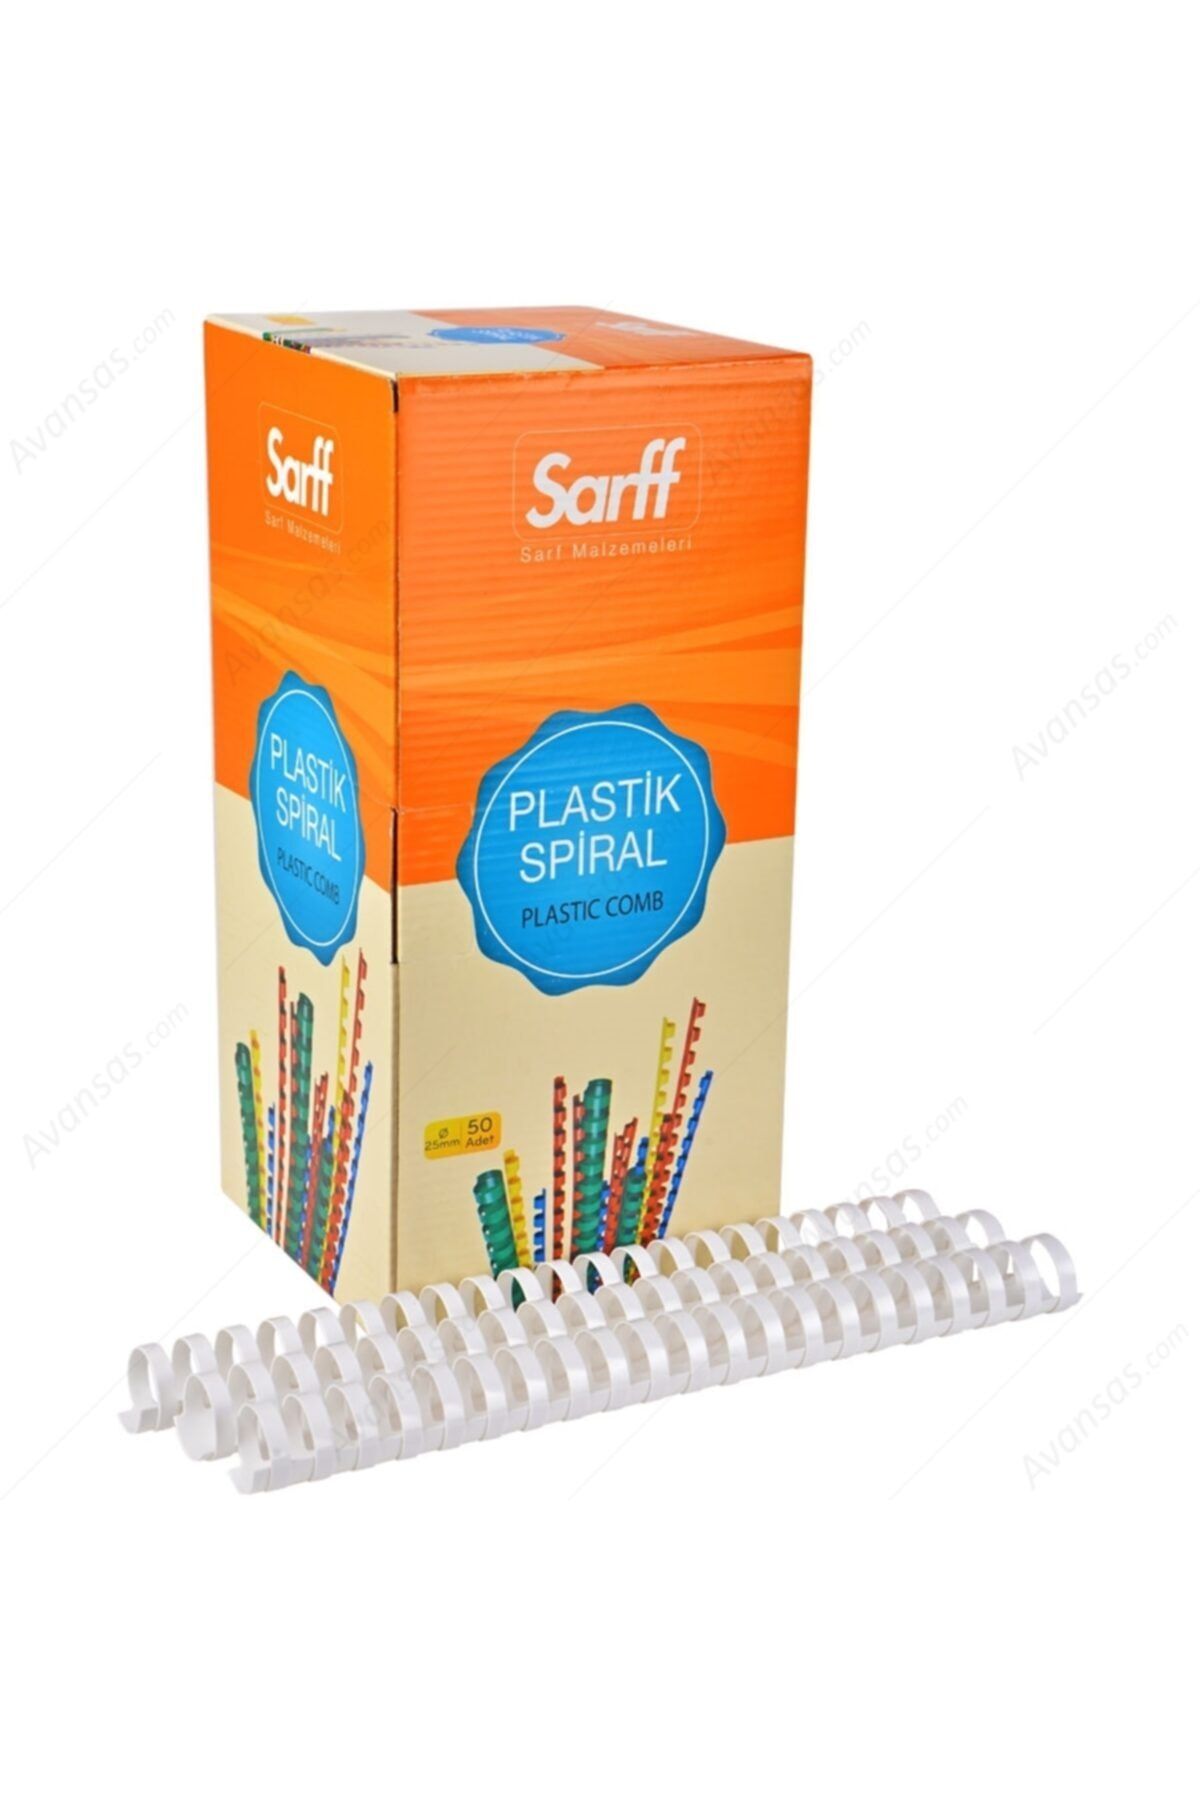 SARFF Plastik Spiral 28 Mm Beyaz 50 Li (1 Paket 50 Adet)